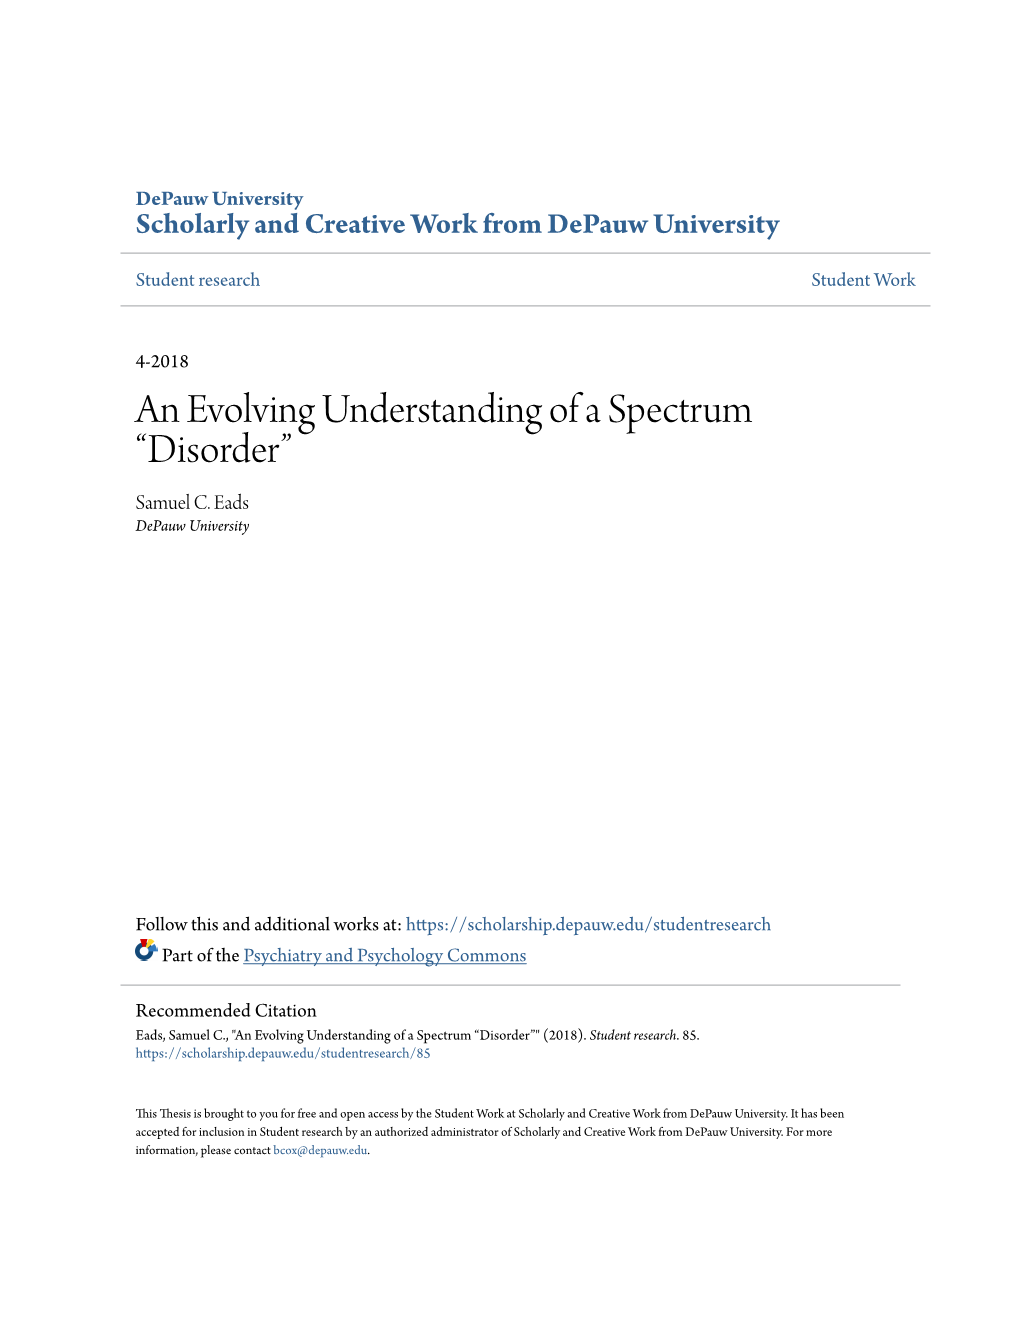 An Evolving Understanding of a Spectrum “Disorder” Samuel C